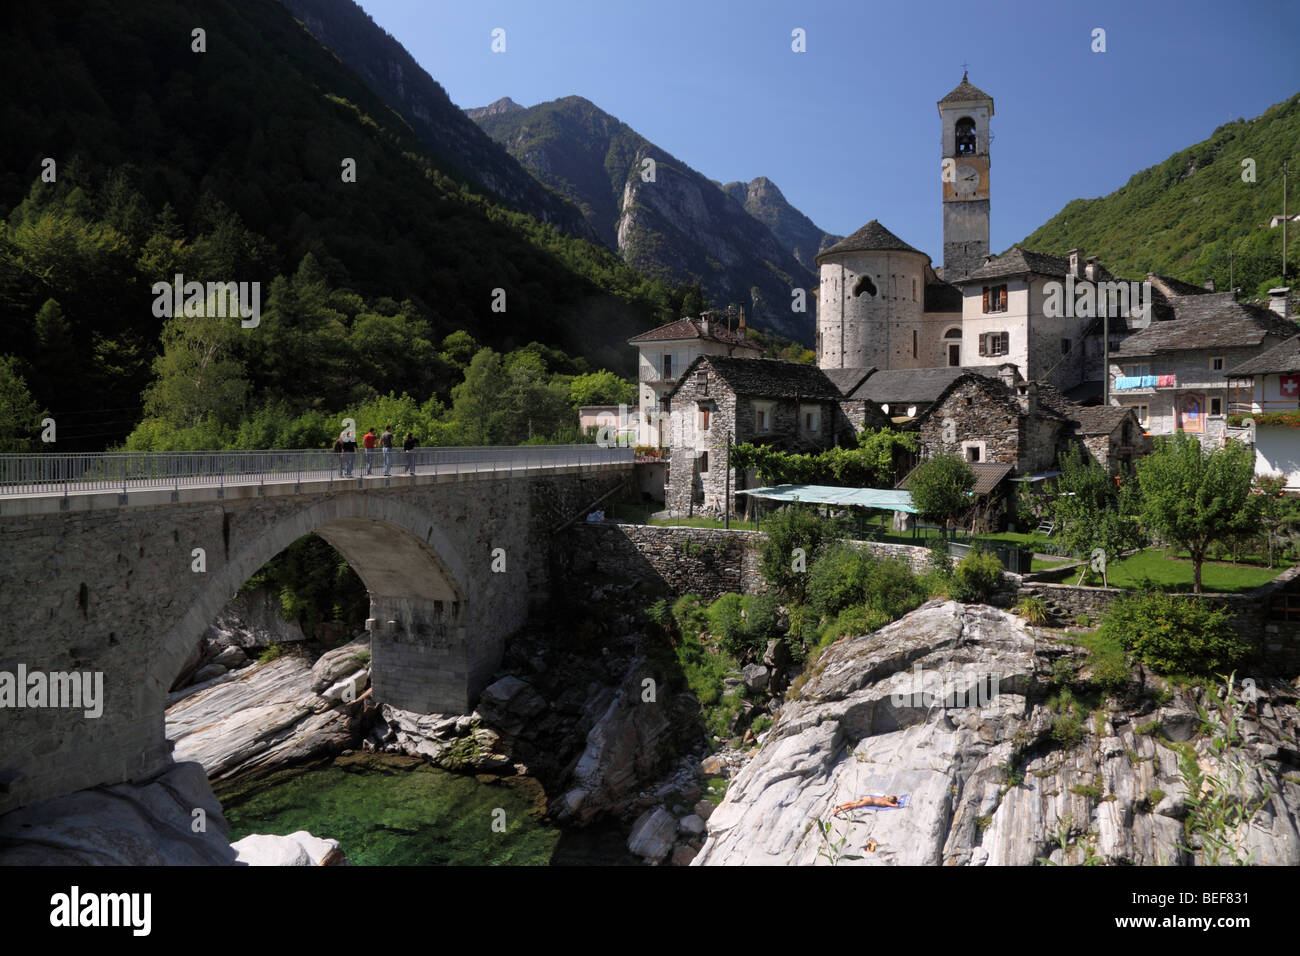 Le village pittoresque de Lavertezzo dans la vallée de Verzasca, Tessin, Suisse Banque D'Images